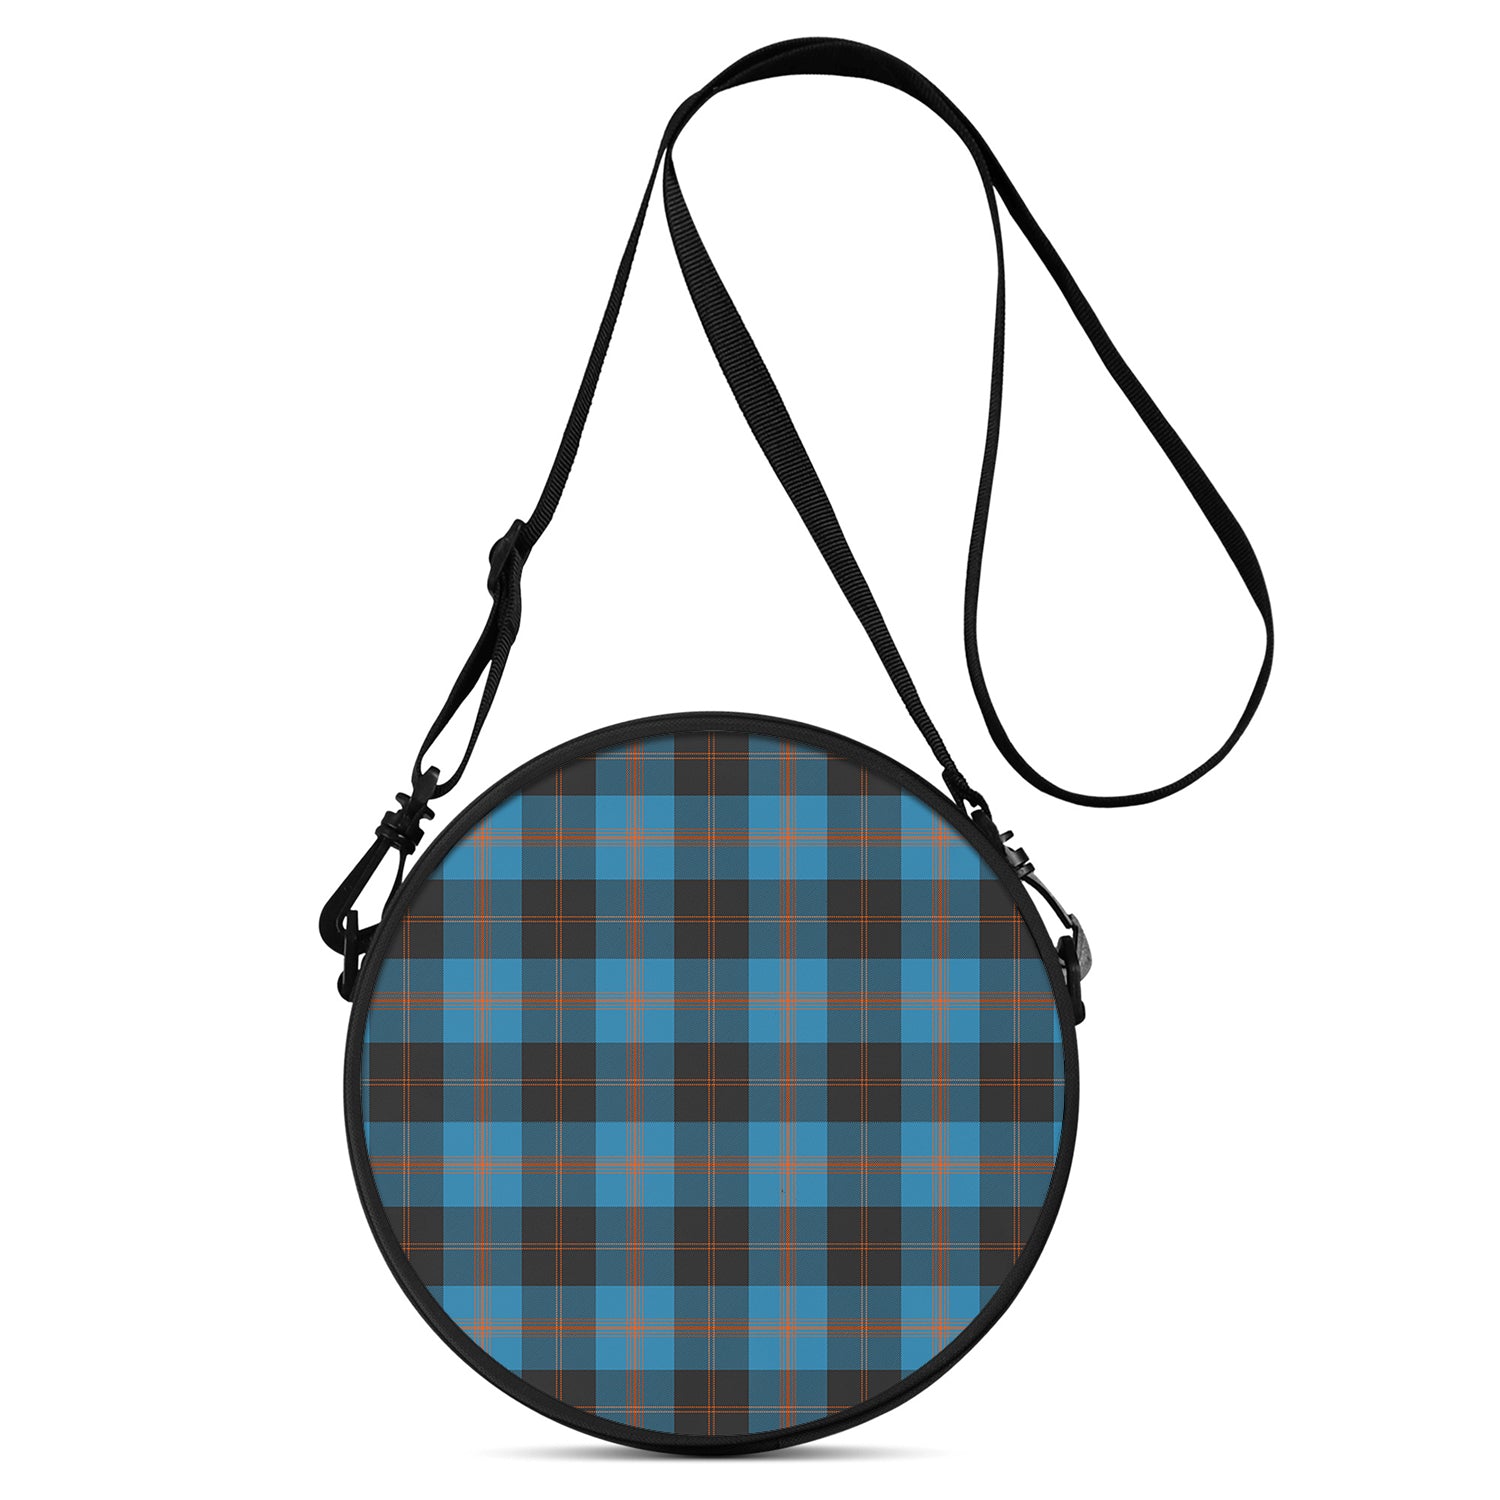 garden-tartan-round-satchel-bags